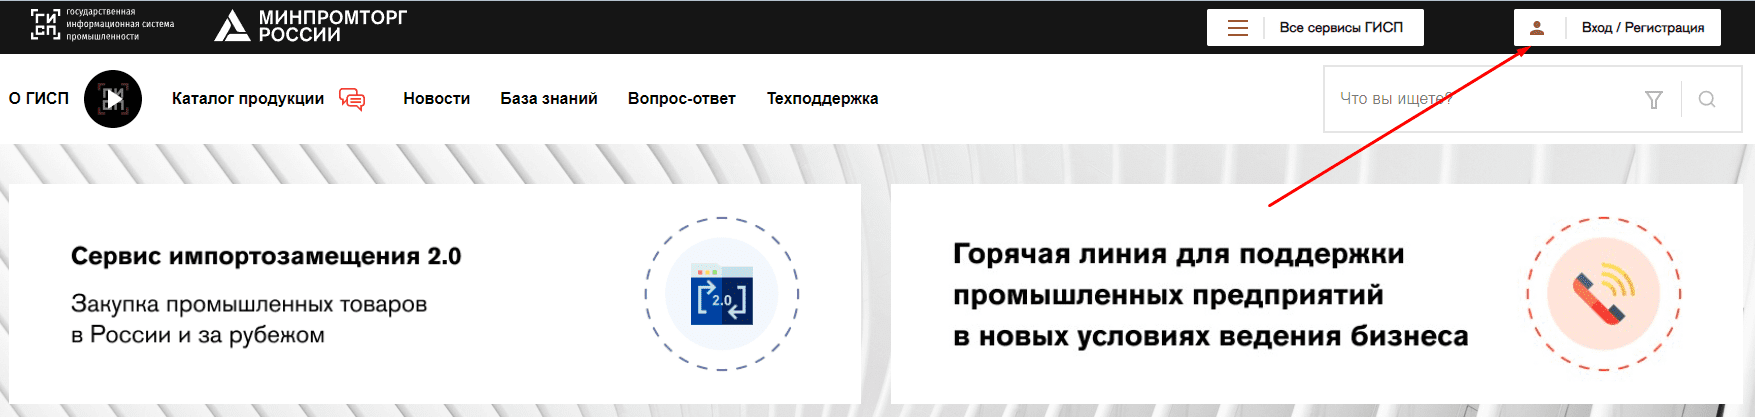 ГИСП Государственная информационная система промышленности (gisp.gov.ru)